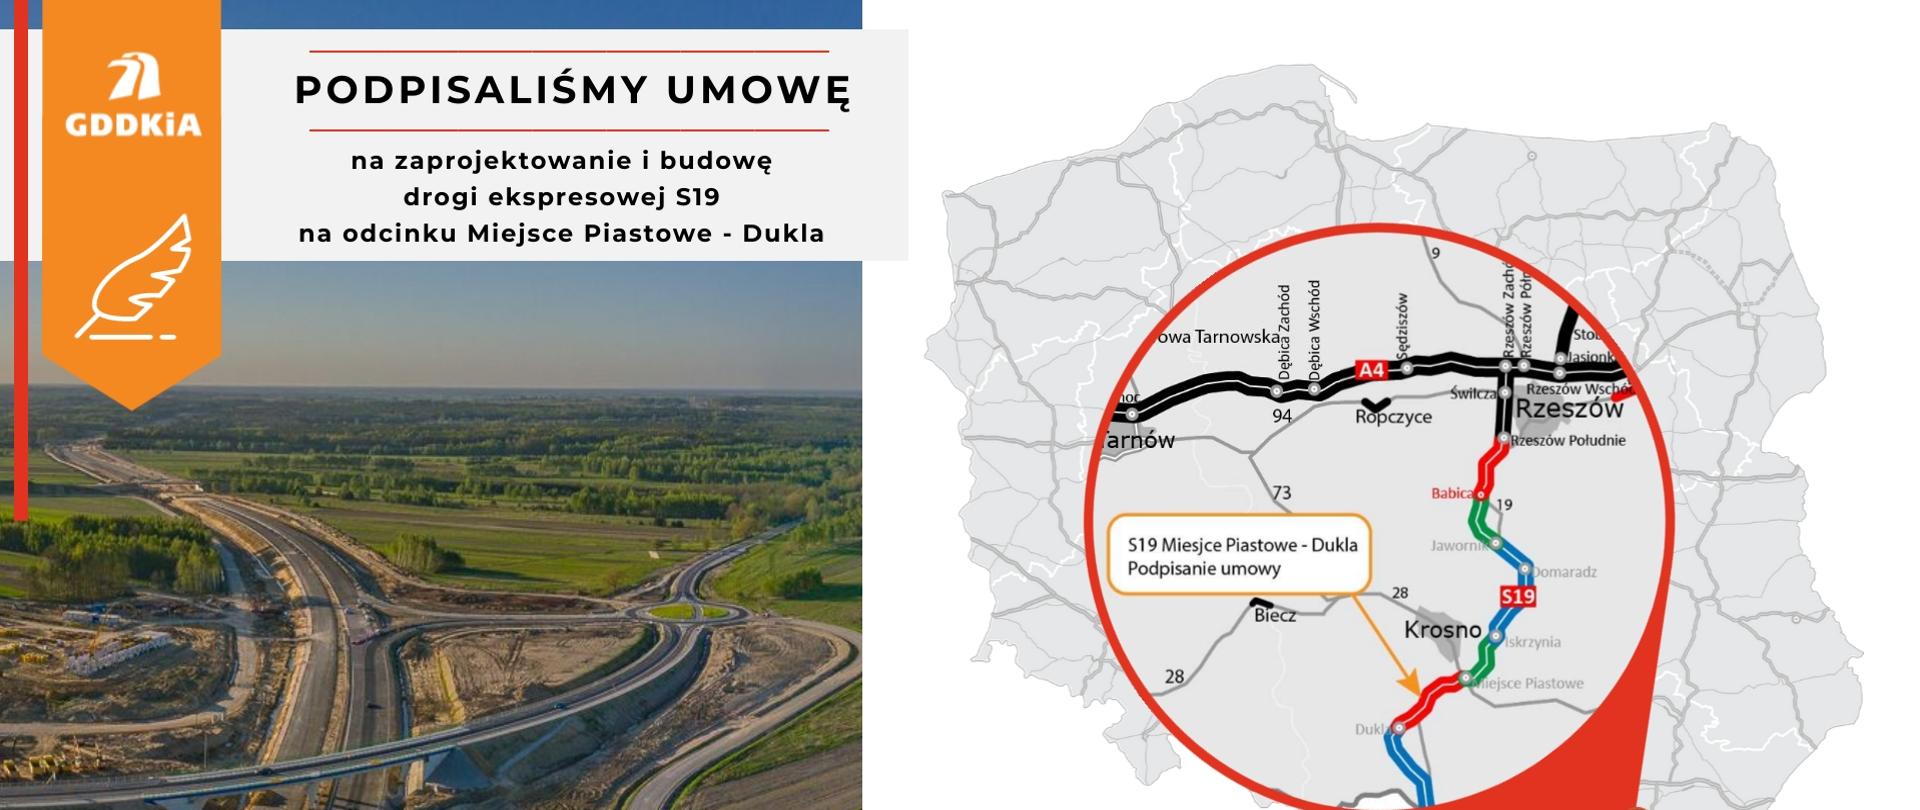 Infografika S19 Miejsce Piastowe - Dukla, zdjęcie z budowy S19 oraz mapa Polski z lokalizacją odcinka S19 Miejsce Piastowe - Dukla 